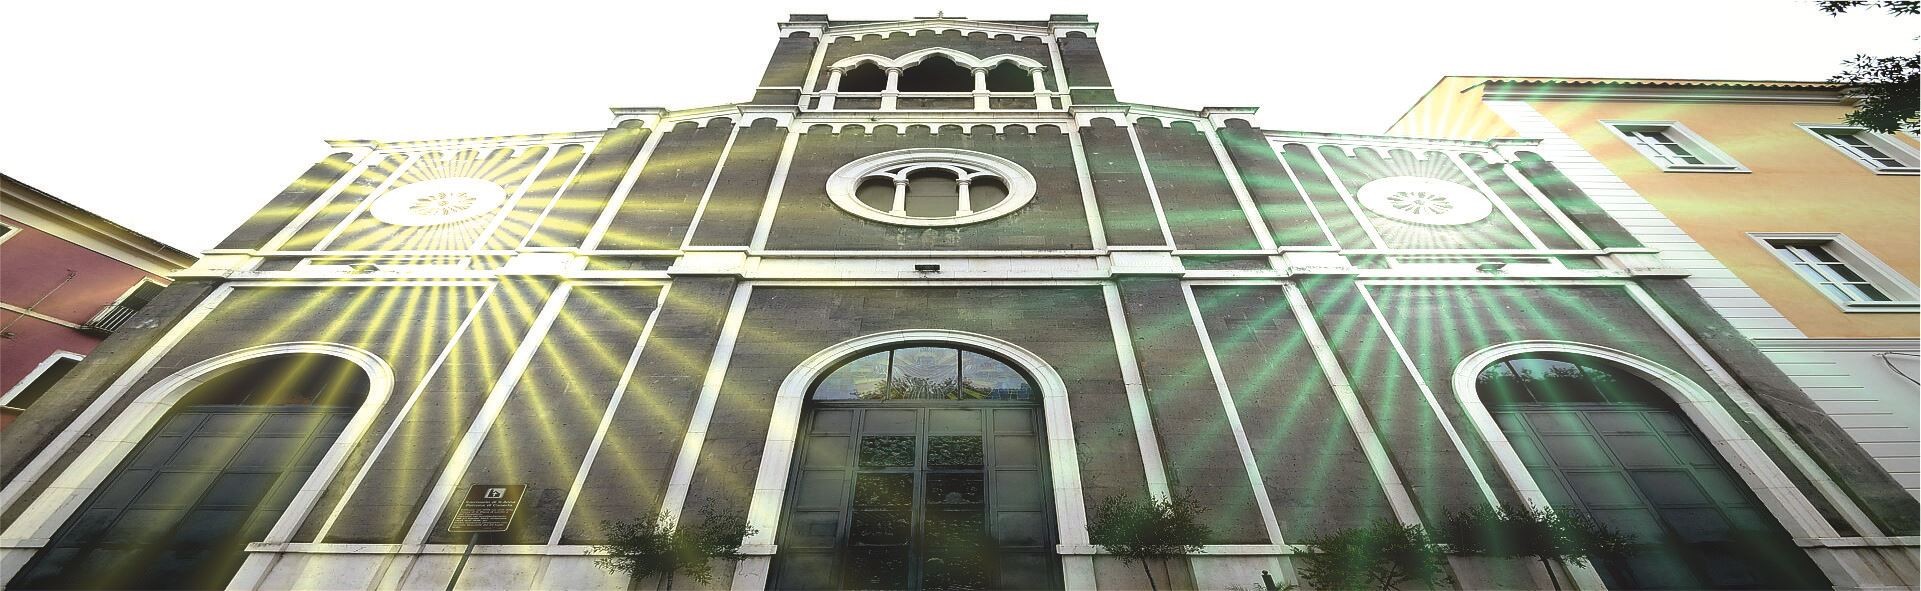 Facciata Stile Gotico - Il Santuario di Sant'Anna - Caserta